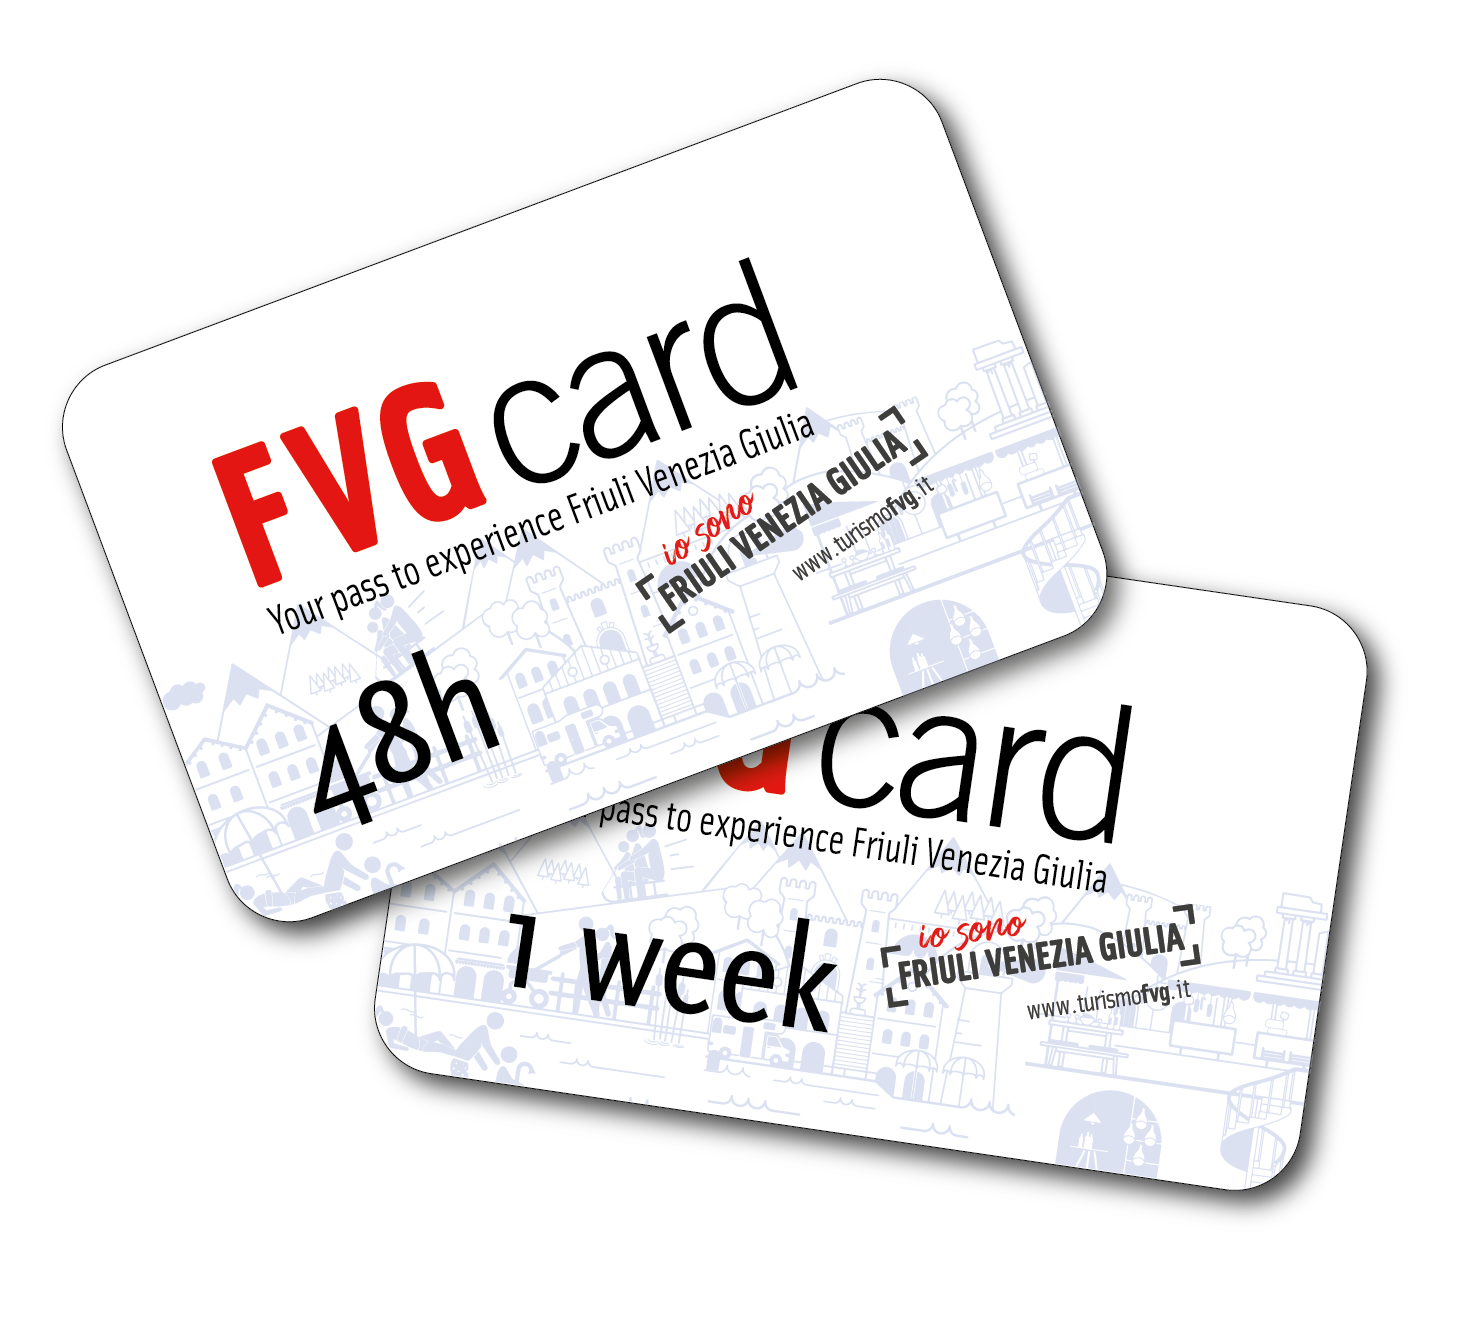 FVG Card